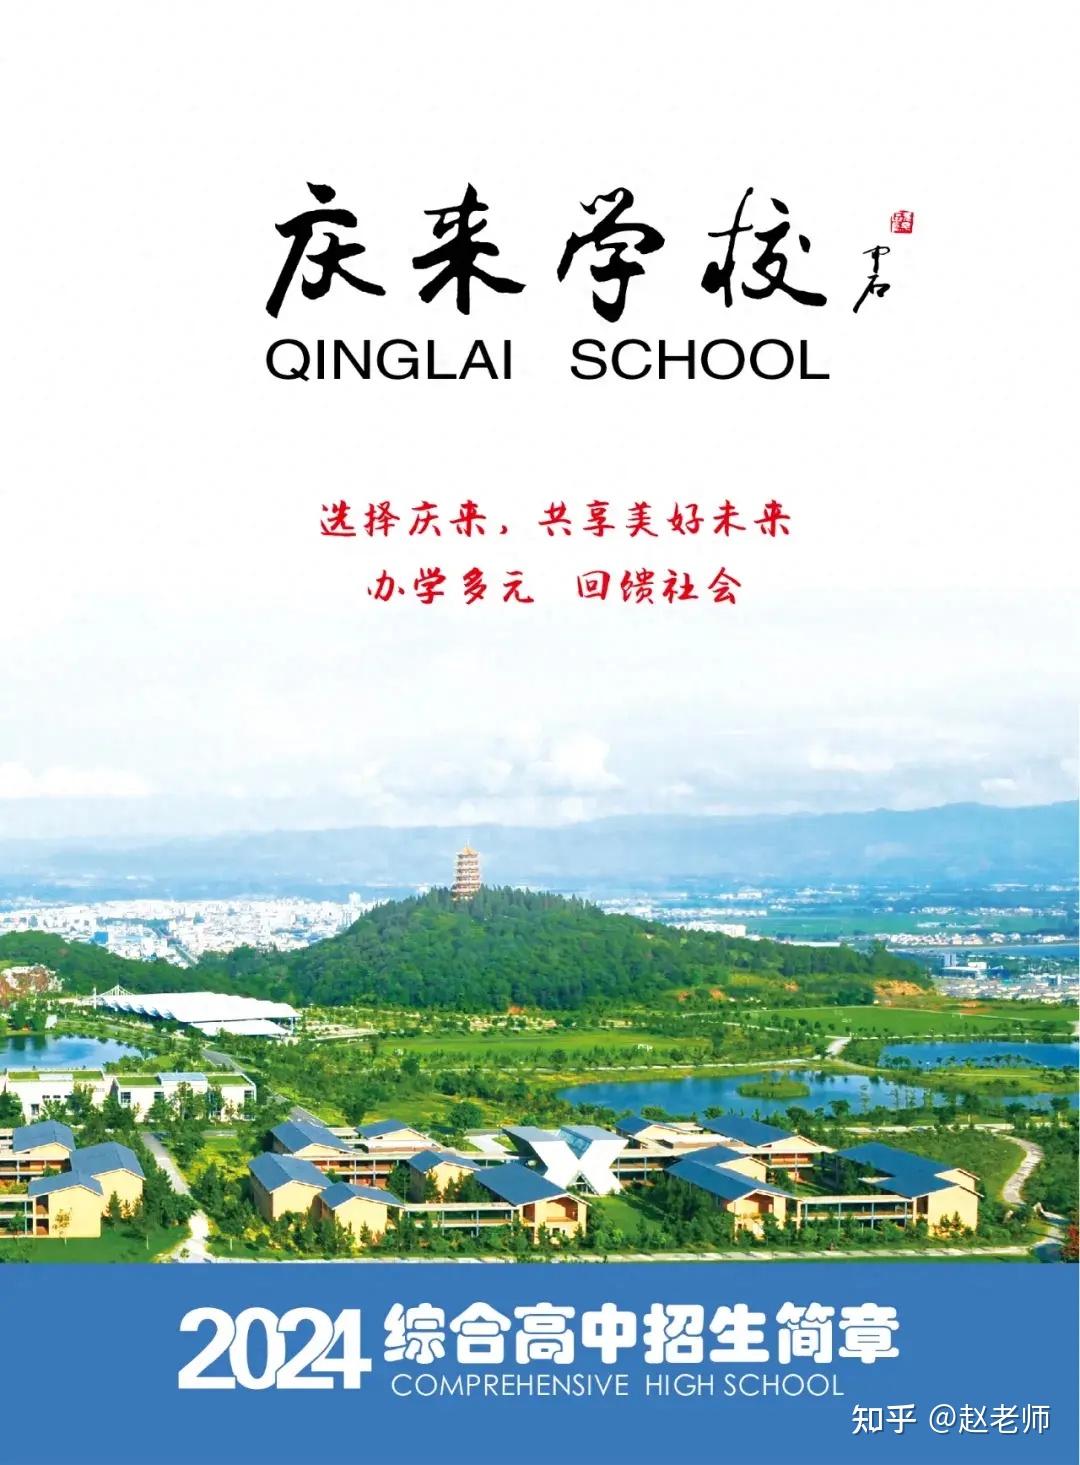 云南庆来学校是由红云红河烟草(集团)有限责任公司红河卷烟厂发起